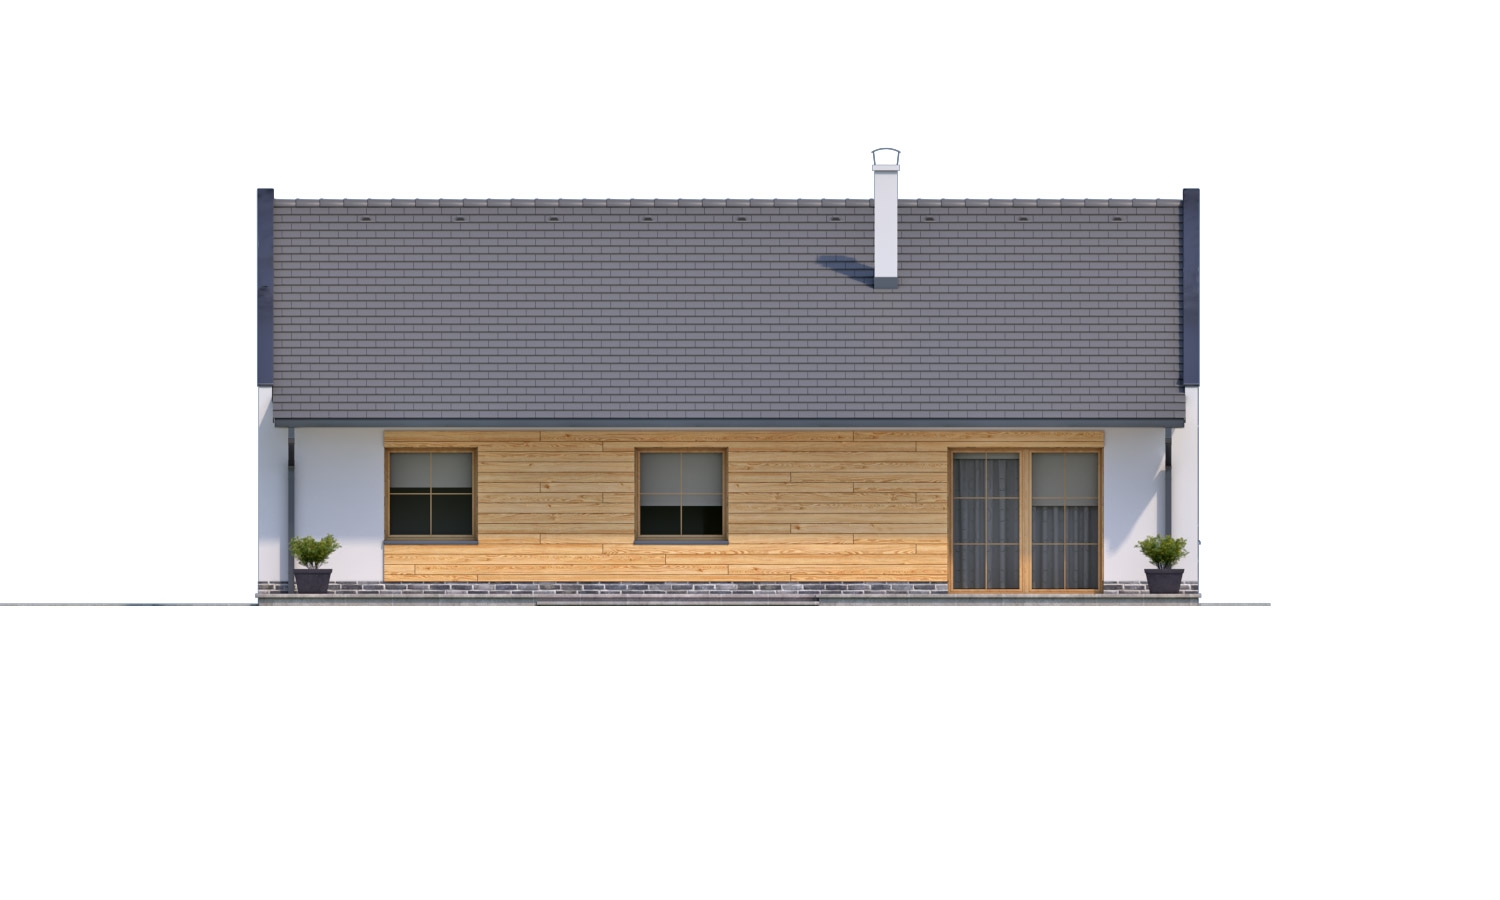 Zrkadlový pohľad 3. - Moderní rodinný dům s garáží pro 4 až 5 člennou rodinku. Možnost změnit tvar střechy, případně realizovat dům bez garáže. Vhodný i jako dvojdům.